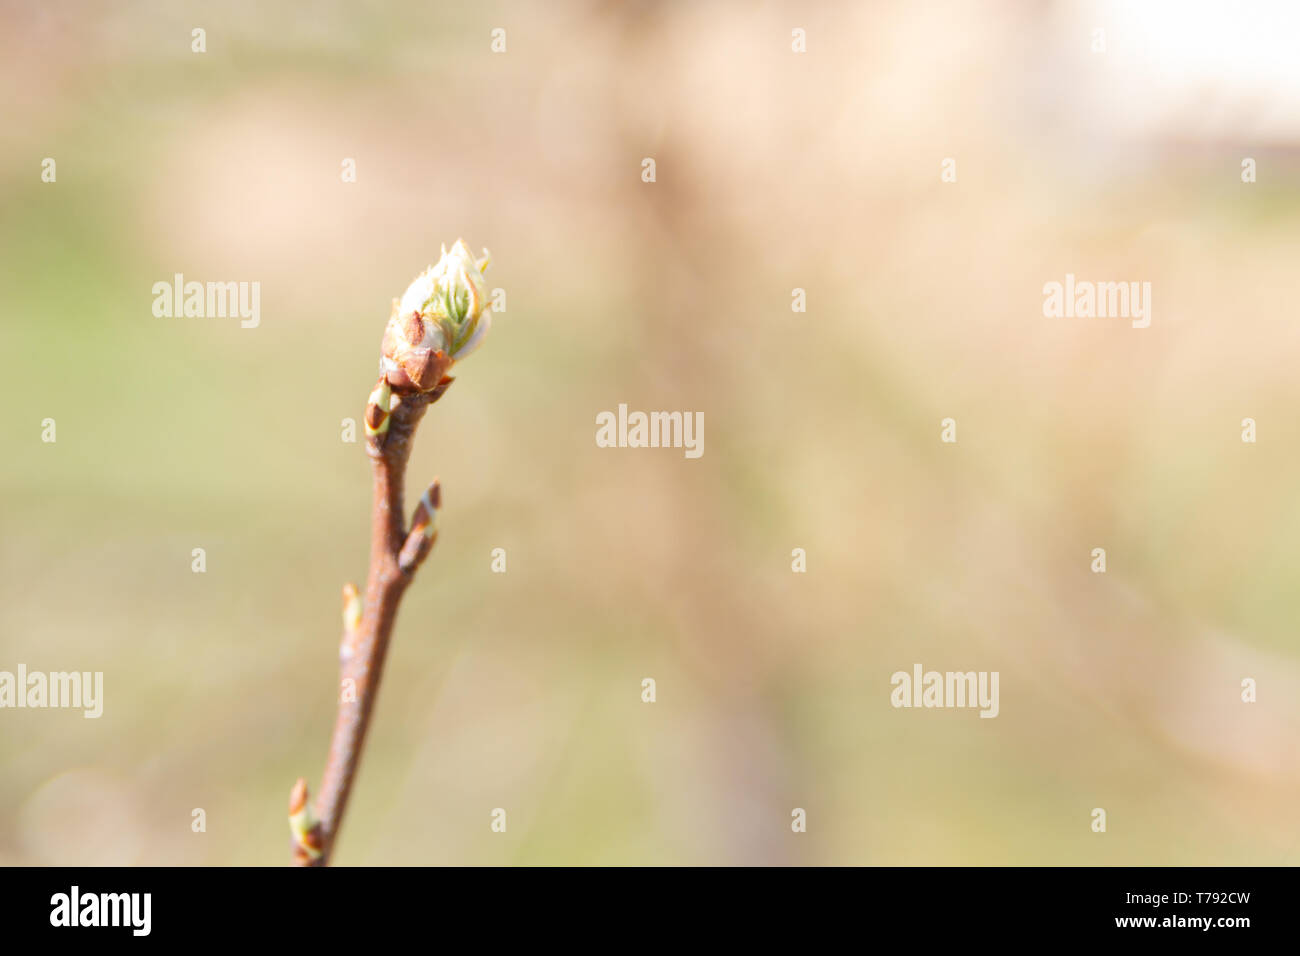 Au début du printemps, les feuilles vertes sur les arbres fleurissent d'bourgeons mûrs Banque D'Images